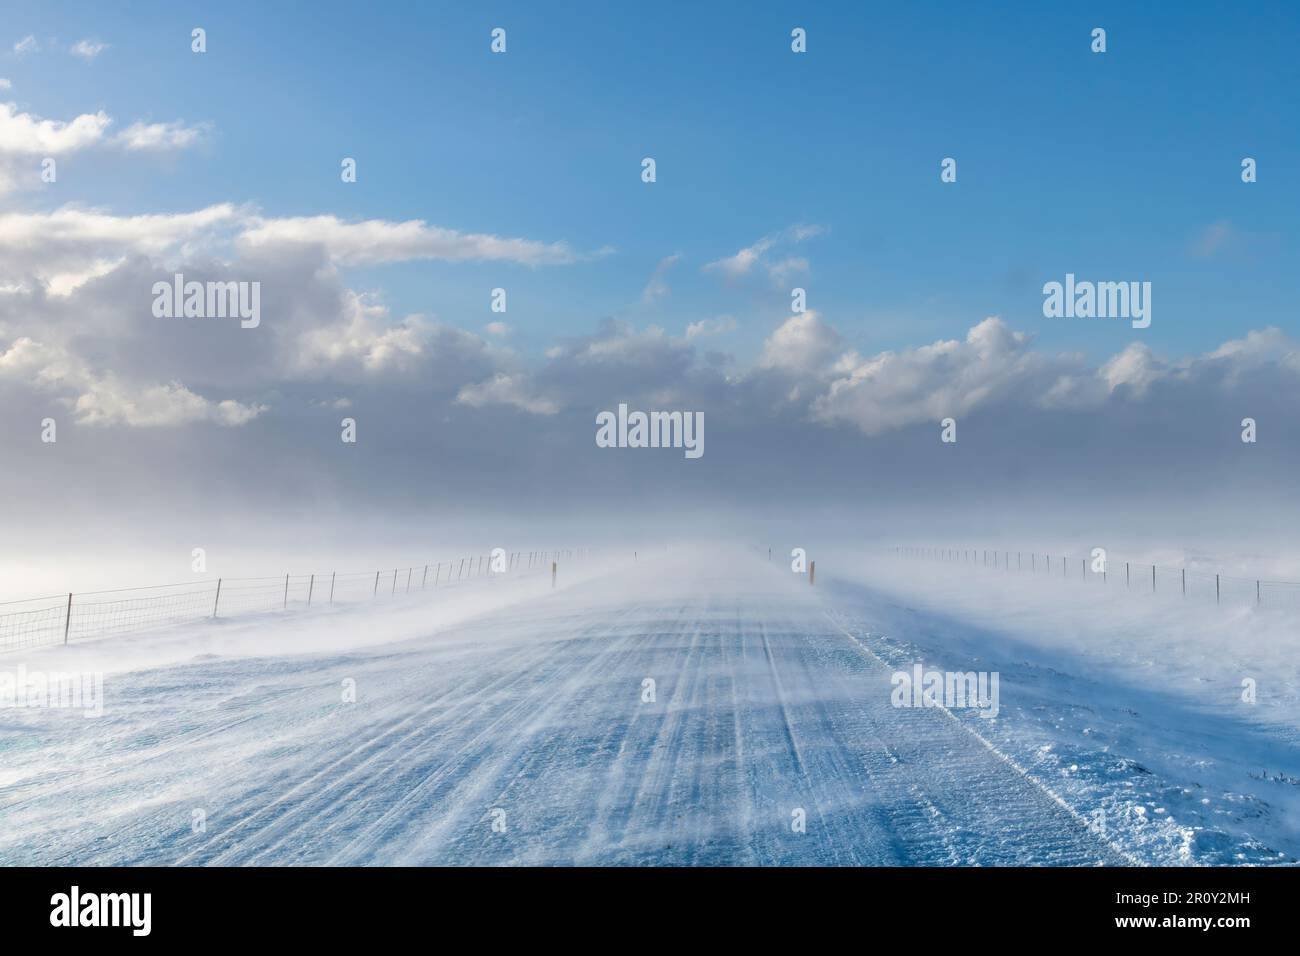 Vista sulla strada coperta di neve nel paesaggio agricolo in Islanda con alti venti che soffiano la neve sulla strada creando una sfocatura con le nubi di neve Foto Stock